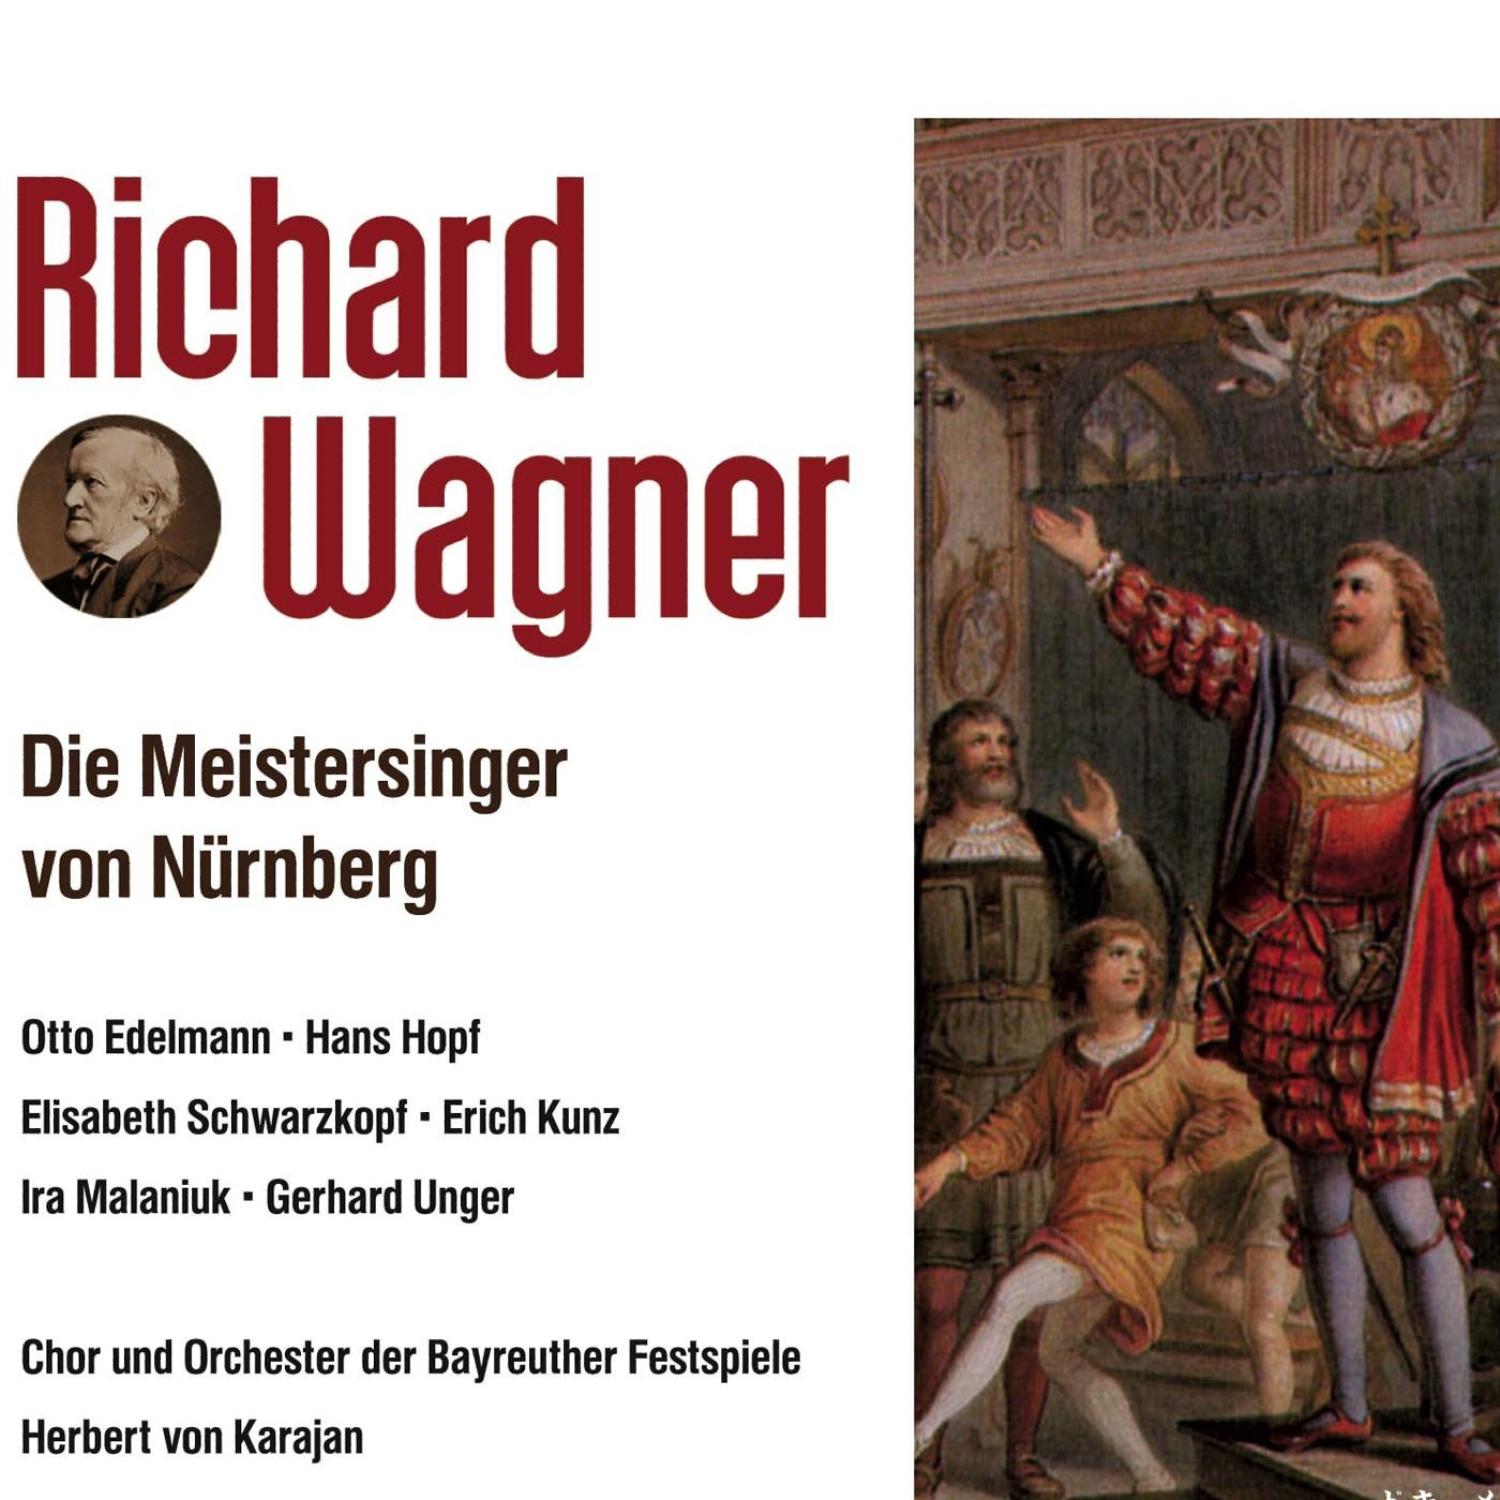 Die Meistersinger von Nürnberg-1 Aufzug Szene 3: Seid meiner Treue wohl versehen